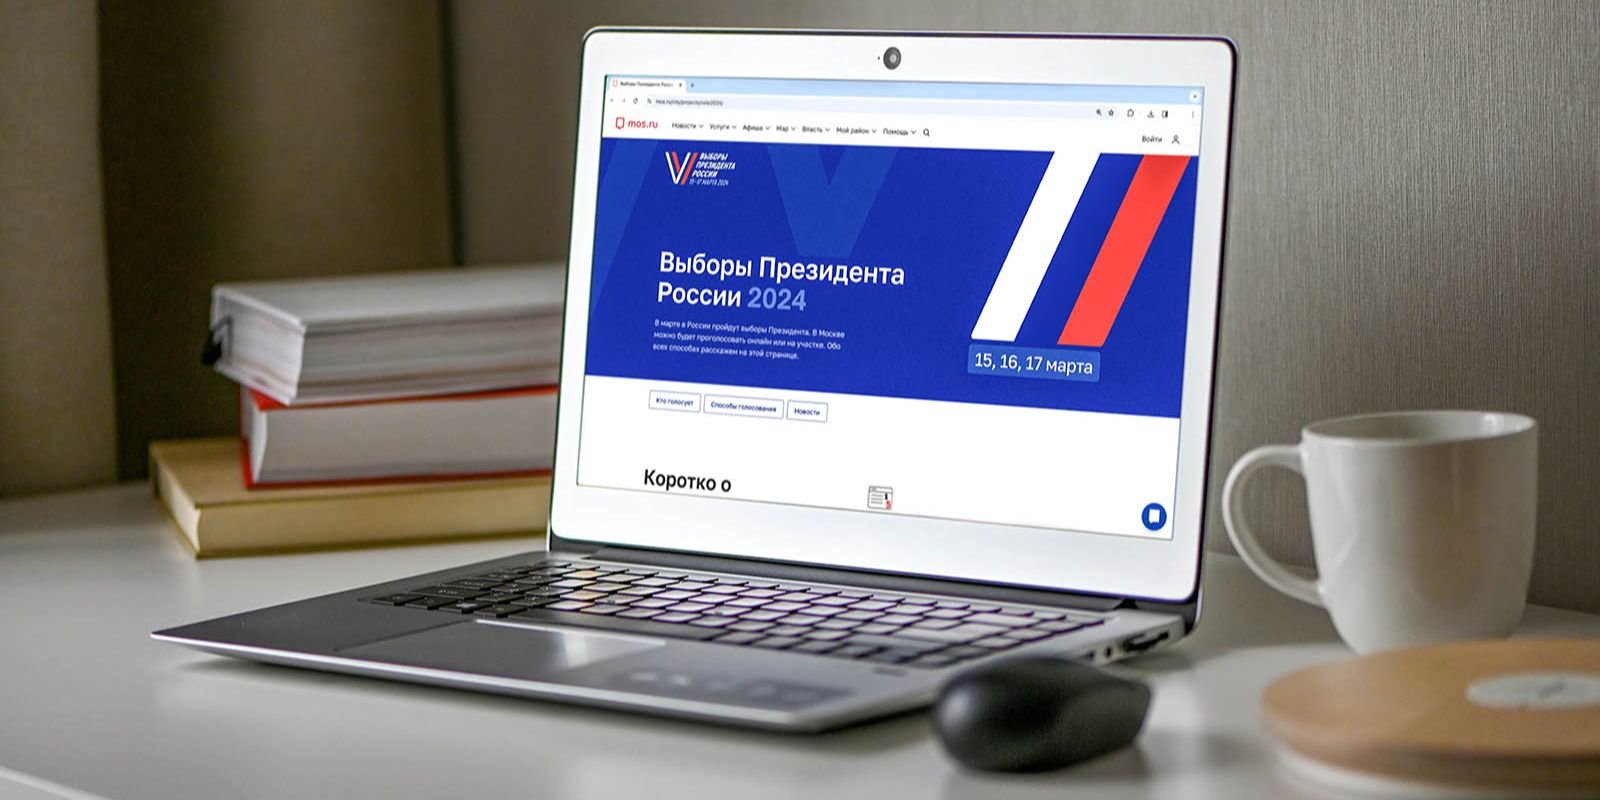 Жители Москвы с нарушениями зрения смогут проголосовать на выборах президента онлайн